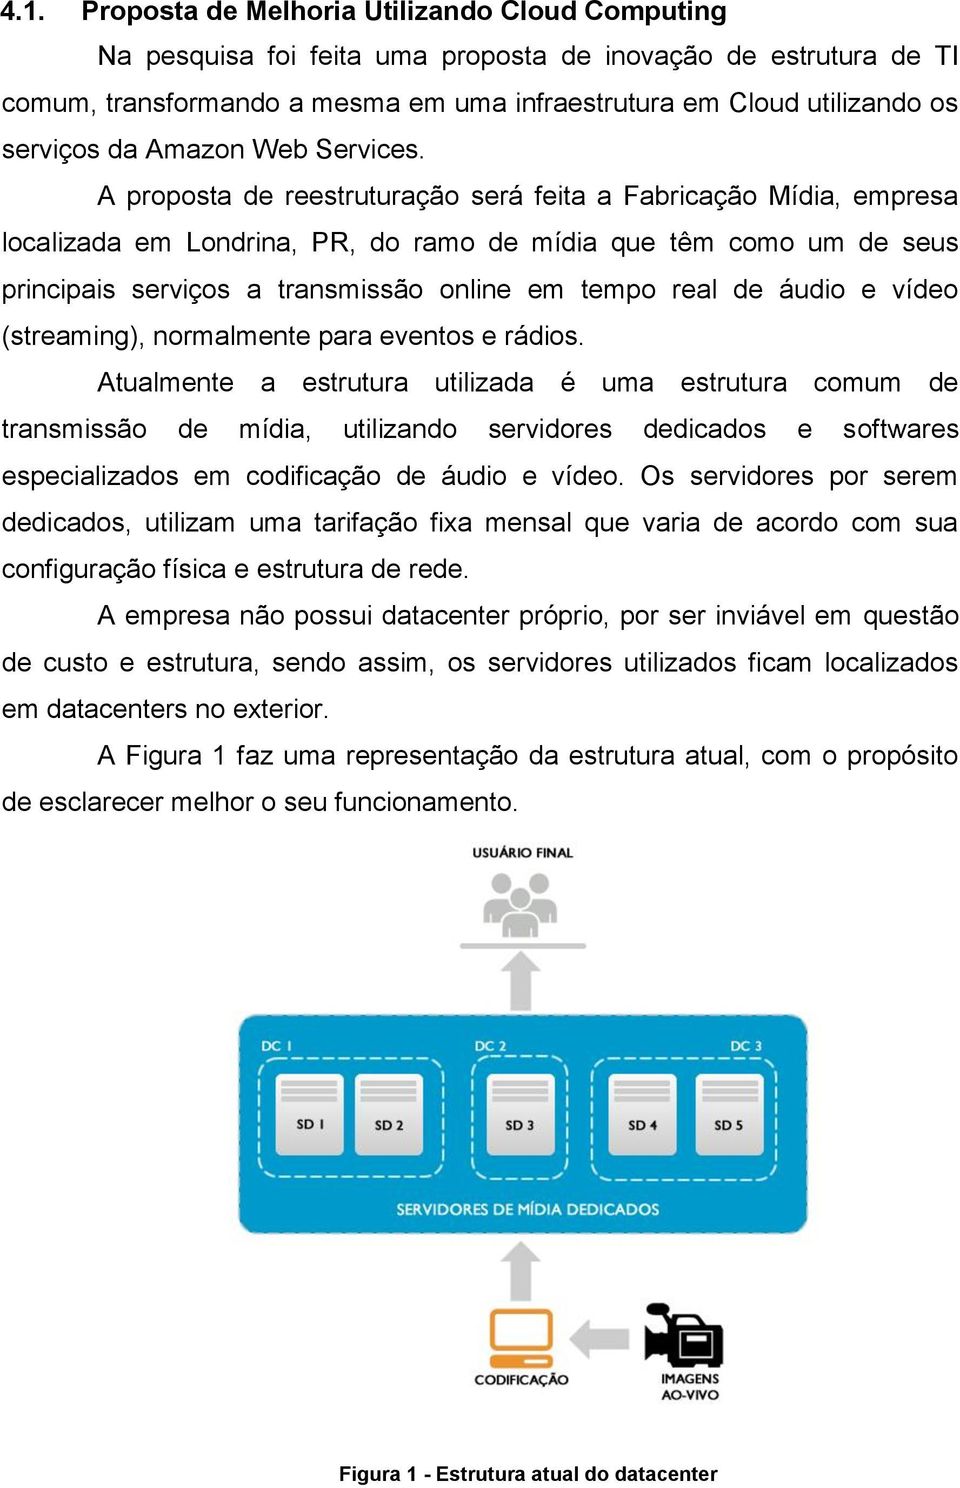 A proposta de reestruturação será feita a Fabricação Mídia, empresa localizada em Londrina, PR, do ramo de mídia que têm como um de seus principais serviços a transmissão online em tempo real de